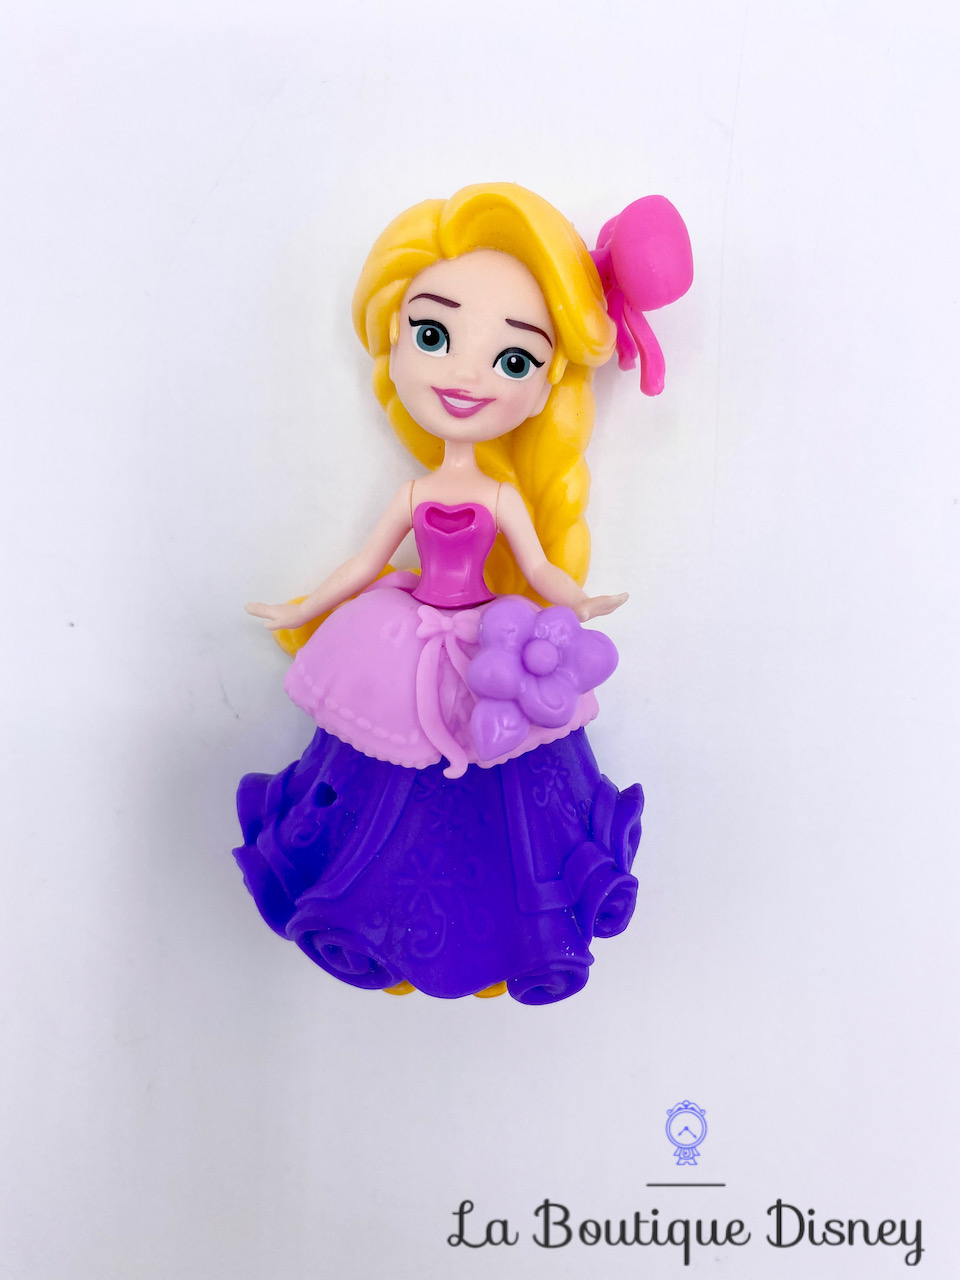 Disney Princesses – Poupee Princesse Disney Mini Poupee Royal Clips  Rapunzel - 8 cm